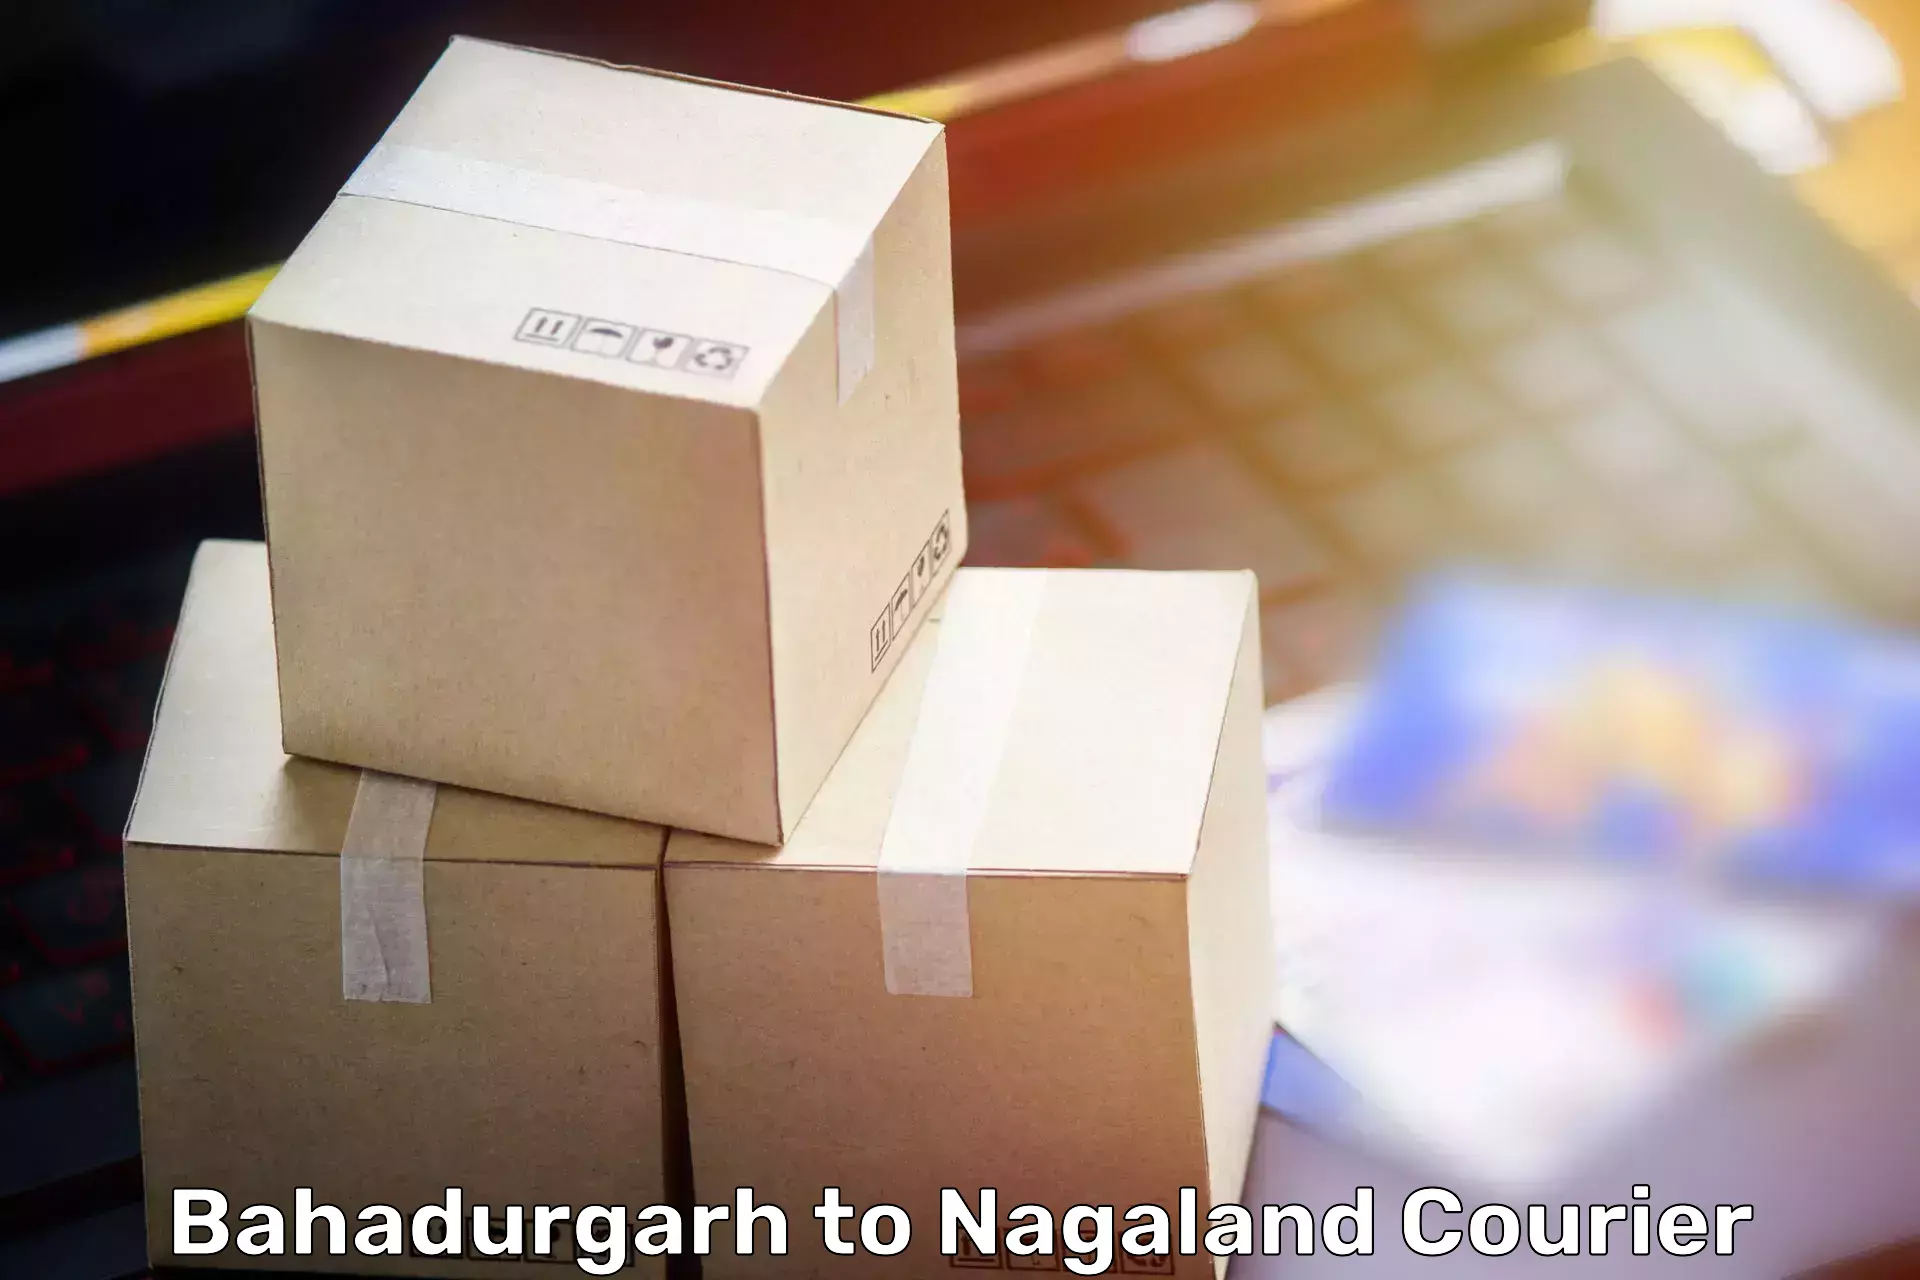 Moving and handling services Bahadurgarh to NIT Nagaland